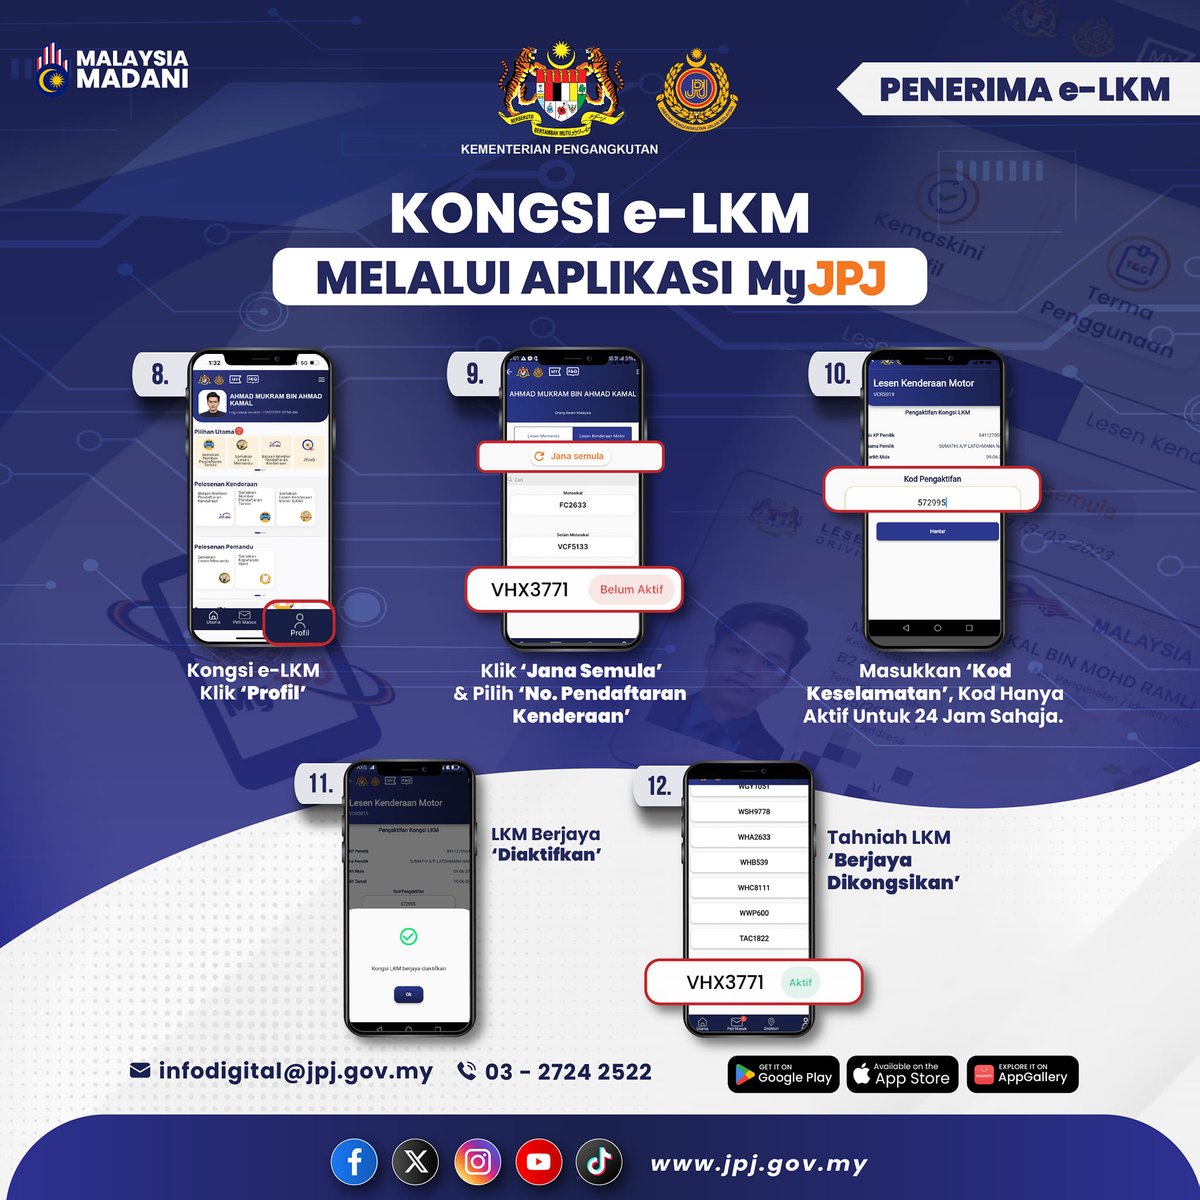 KONGSI e-LKM MELALUI APLIKASI MyJPJ Pemilik kenderaan boleh kongsi Lesen Kenderaan Motor (e-LKM) melalui aplikasi MyJPJ kepada ahli keluarga, rakan atau individu lain yang dibenarkan oleh pemilik kenderaan.-@JPJ_MALAYSIA 'Yang Sahih di Berita RTM' #RTM #BeritaRTM #MalaysiaMADANI